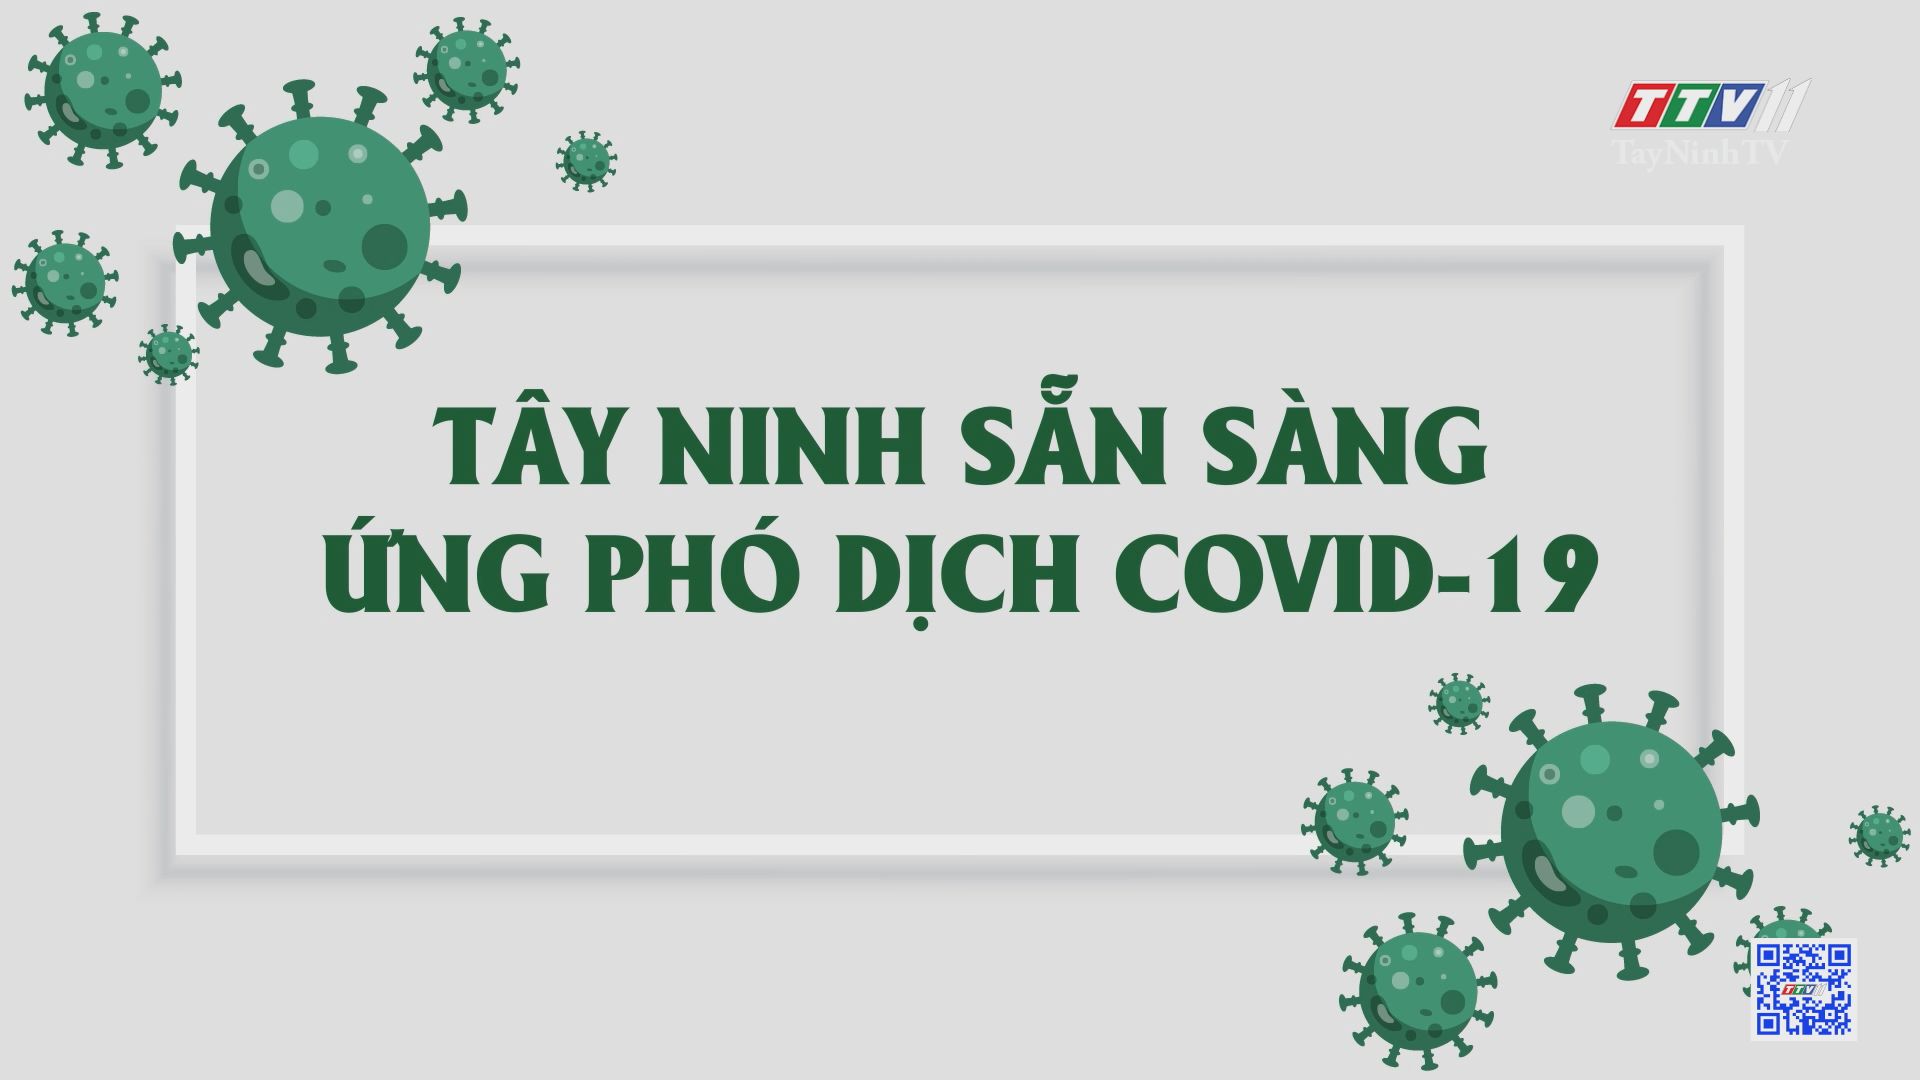 Tây Ninh sẵn sàng ứng phó dịch COVID-19 | Sức khỏe cho mọi người | TayNinhTV